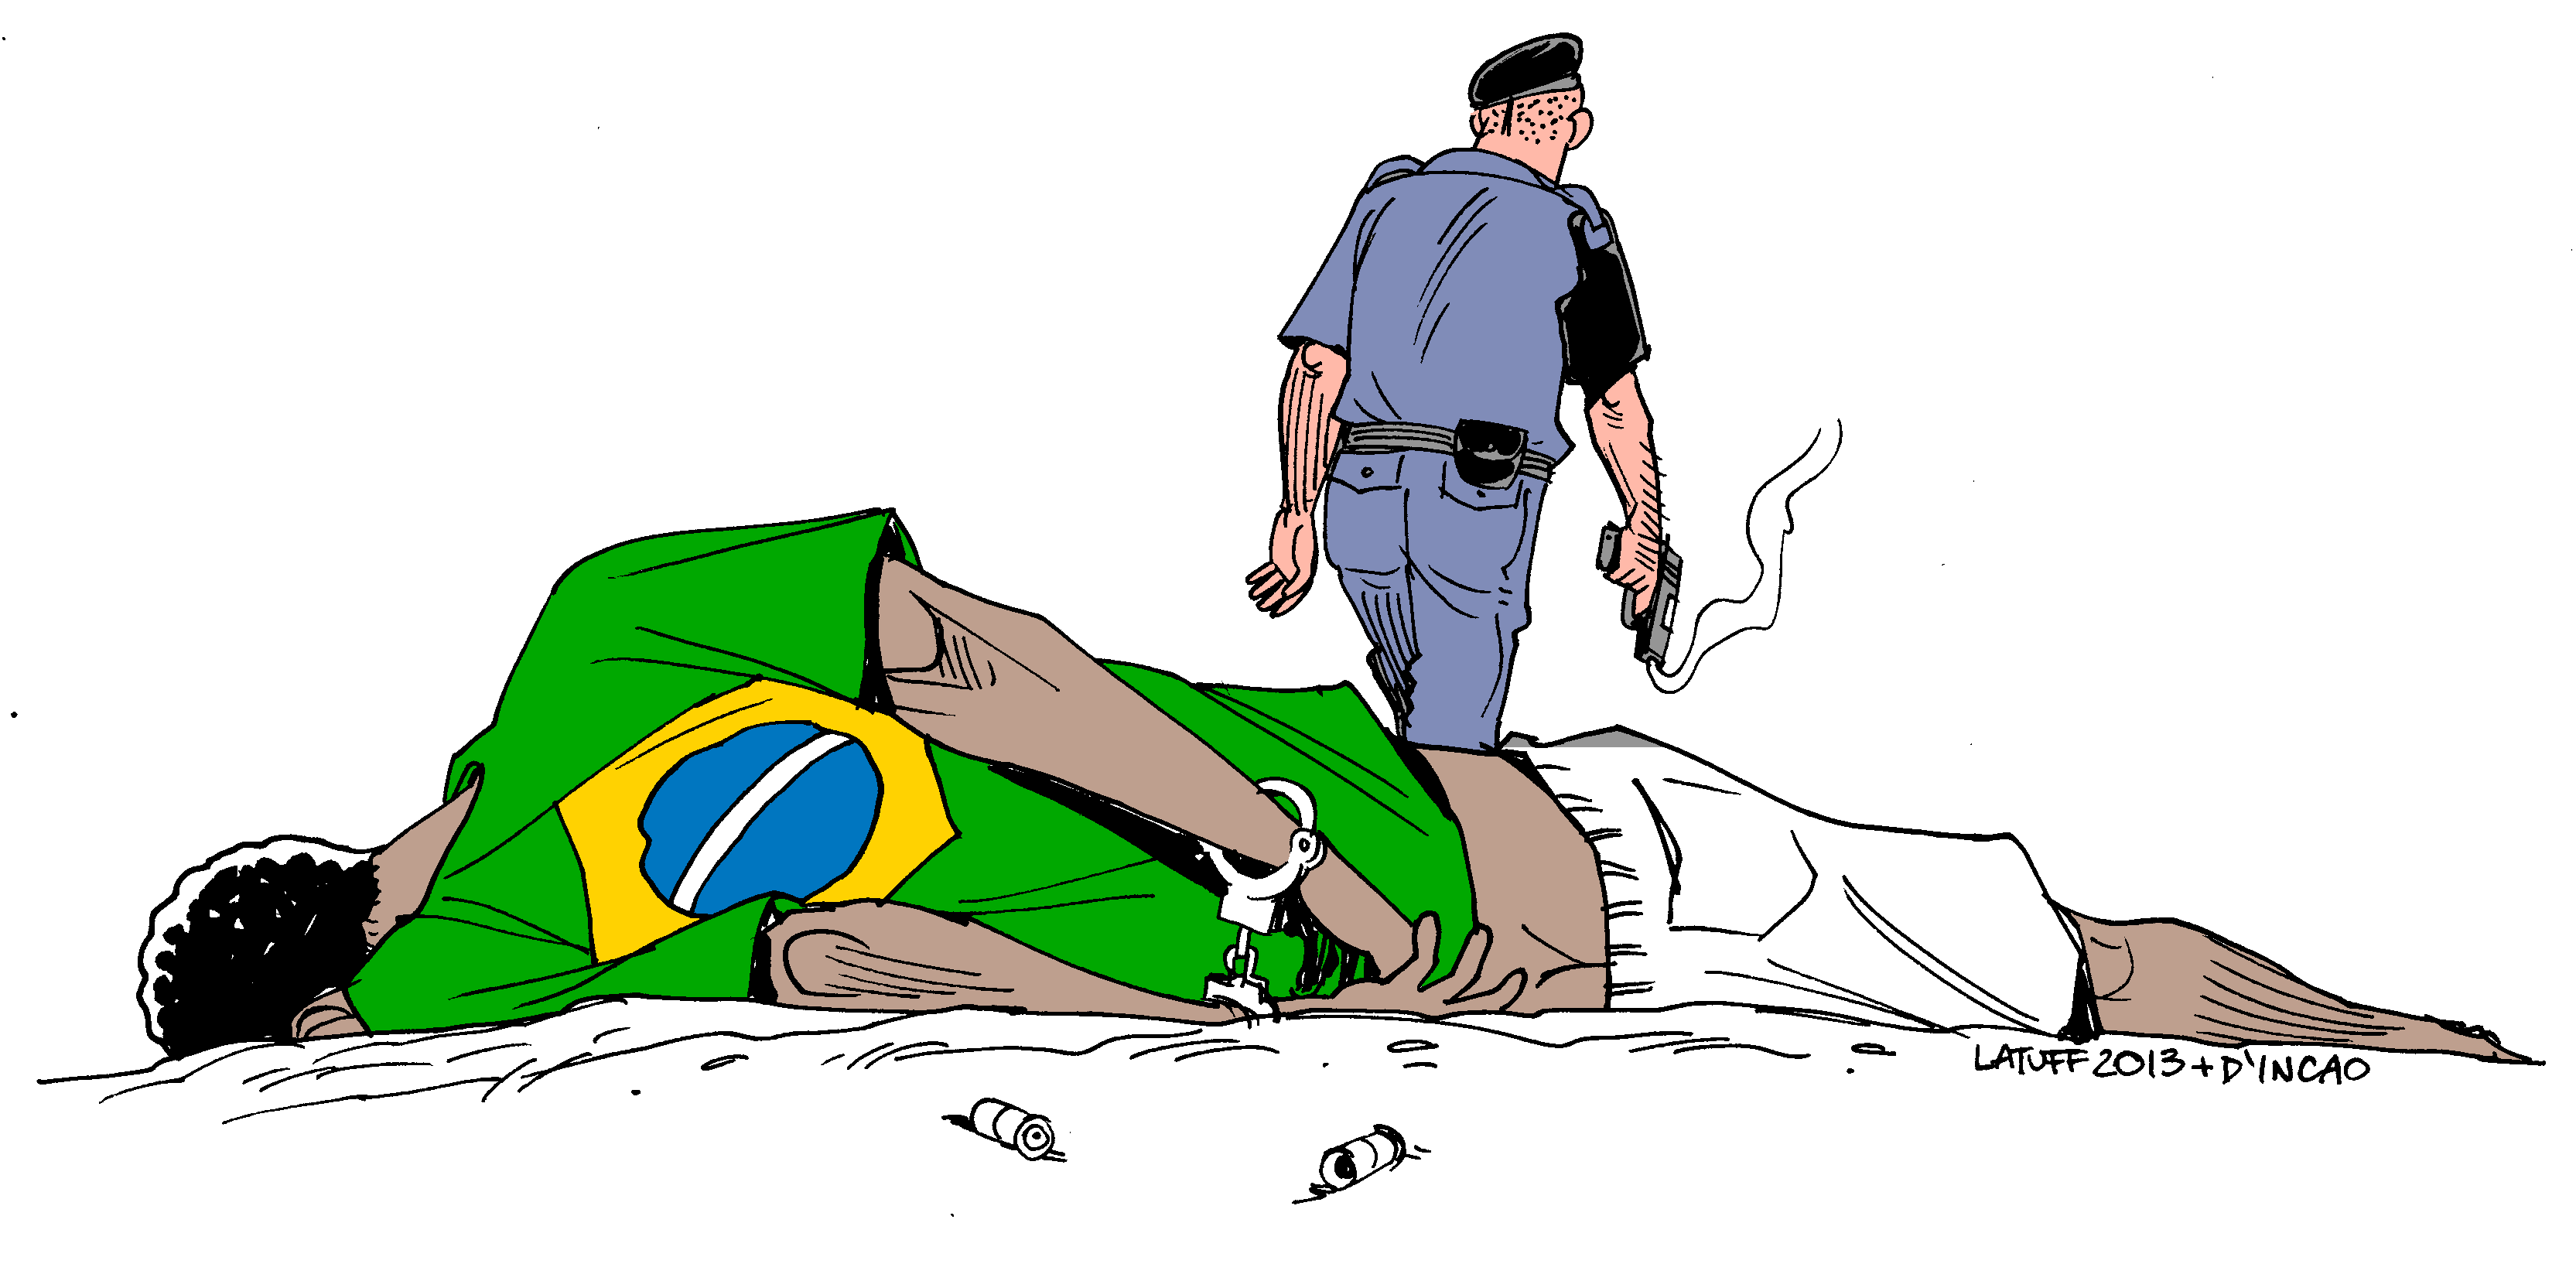 Frequente em comunidades negras, a violência policial não foi registrada nos atos terroristas em Brasília